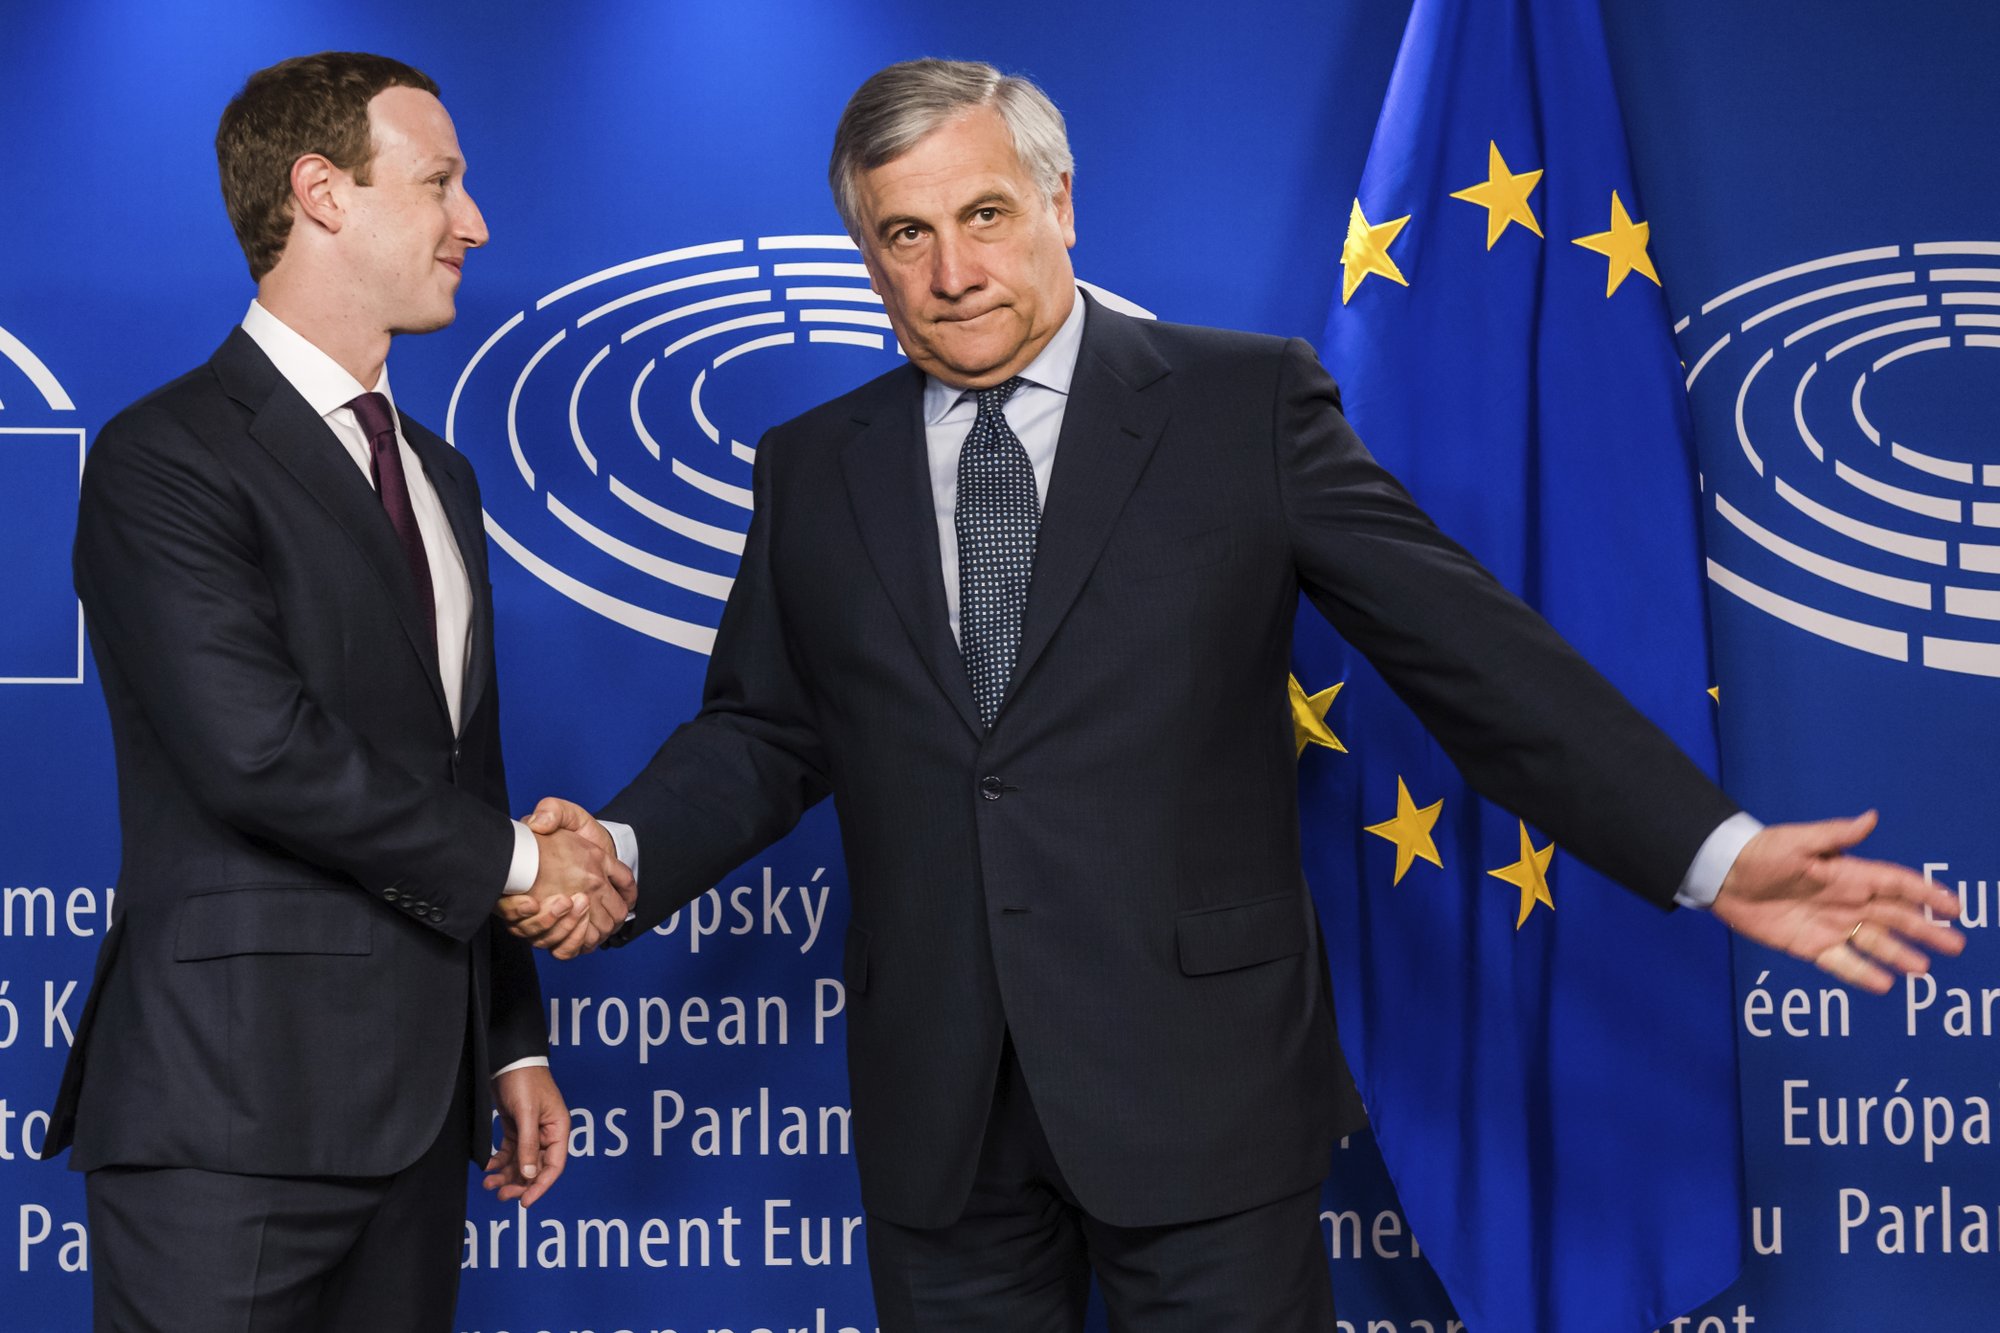 El Parlamento Europeo quiere auditar a Facebook después del caso Cambridge Analytica